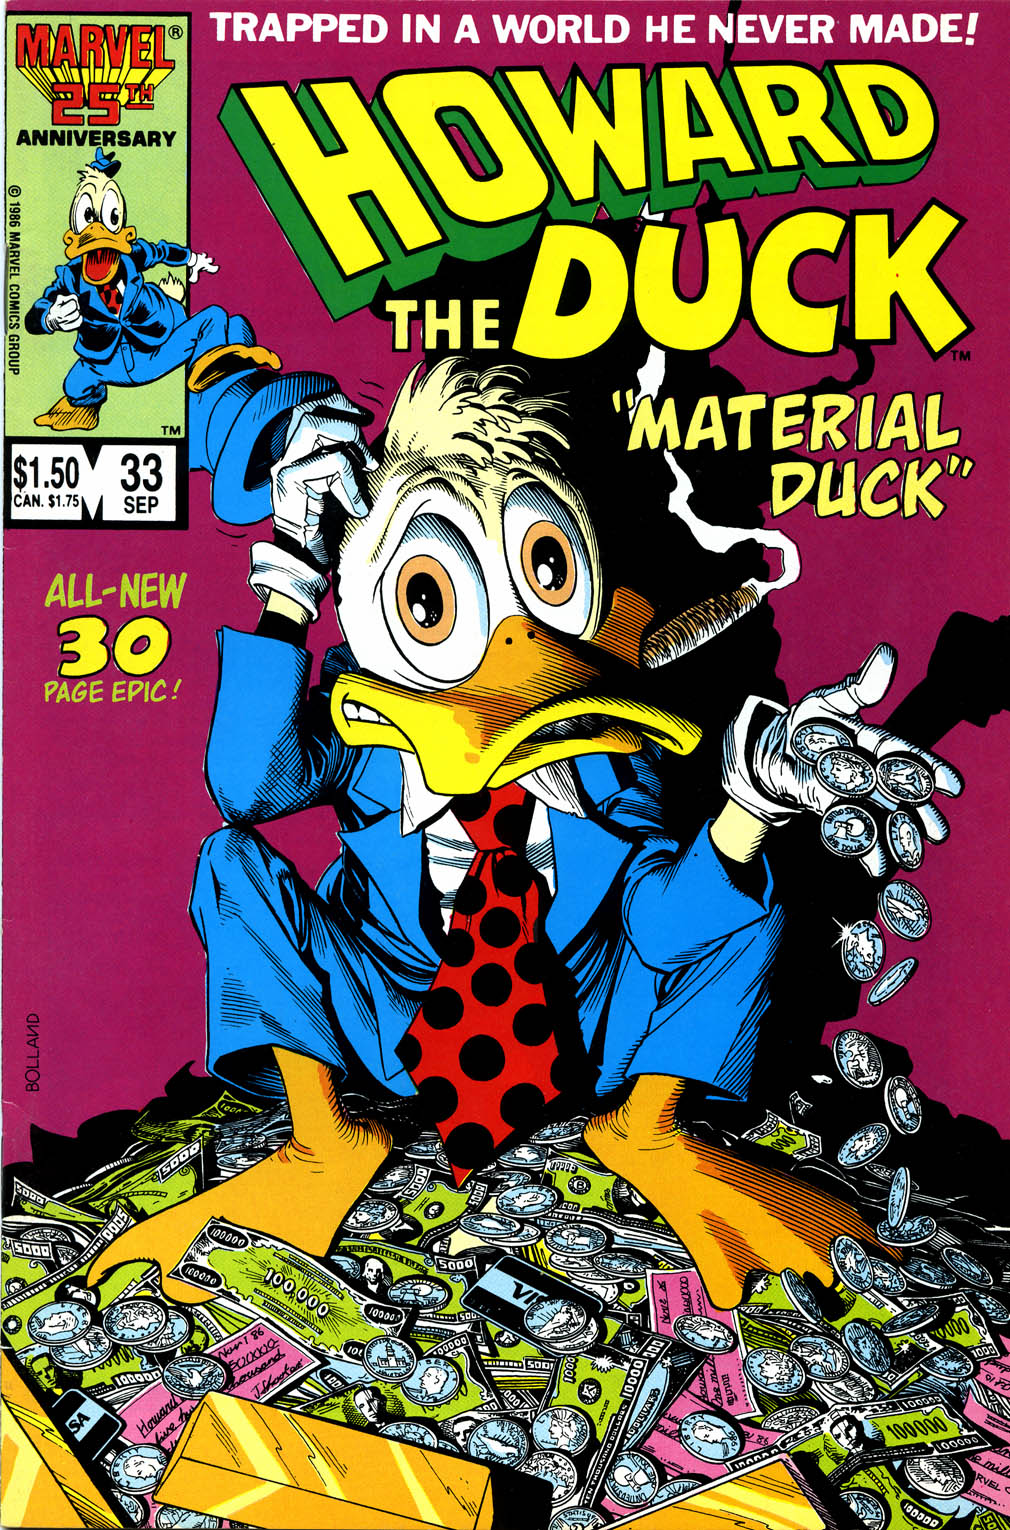 Howard The Duck V1 033 Read Howard The Duck V1 033 Comic Online In